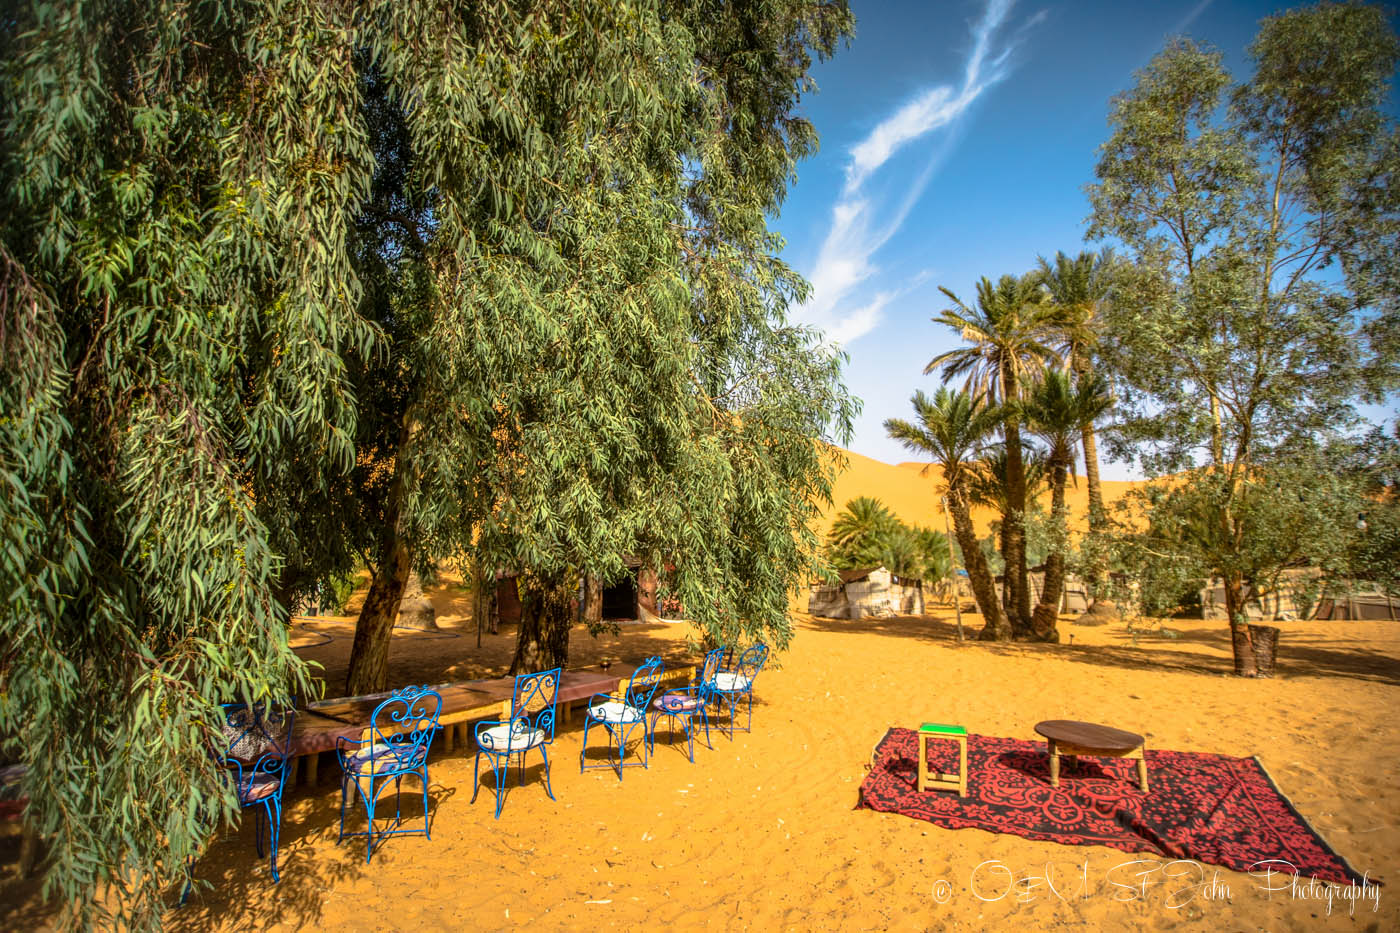 Inside the oasis in Erg Chebbi, Sahara Desert. Morocco